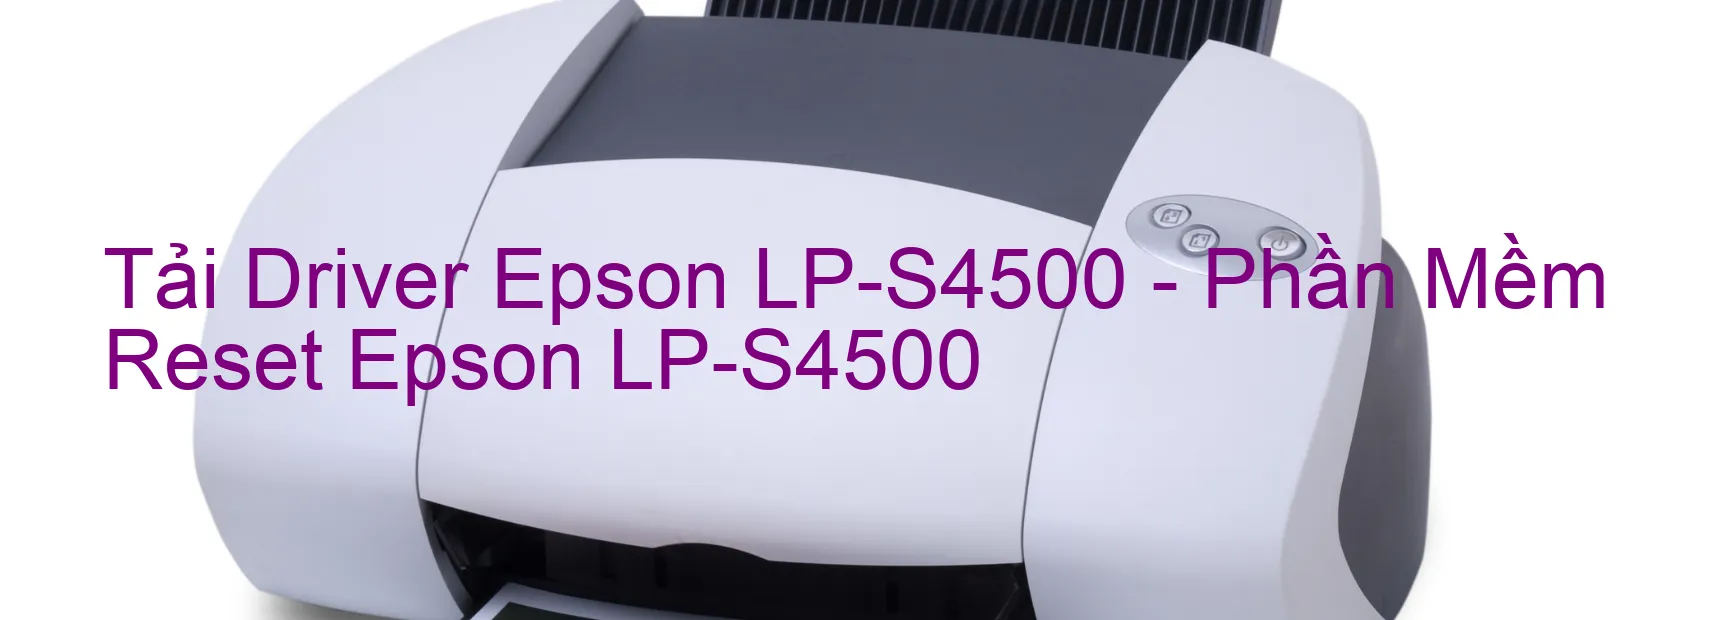 Driver Epson LP-S4500, Phần Mềm Reset Epson LP-S4500